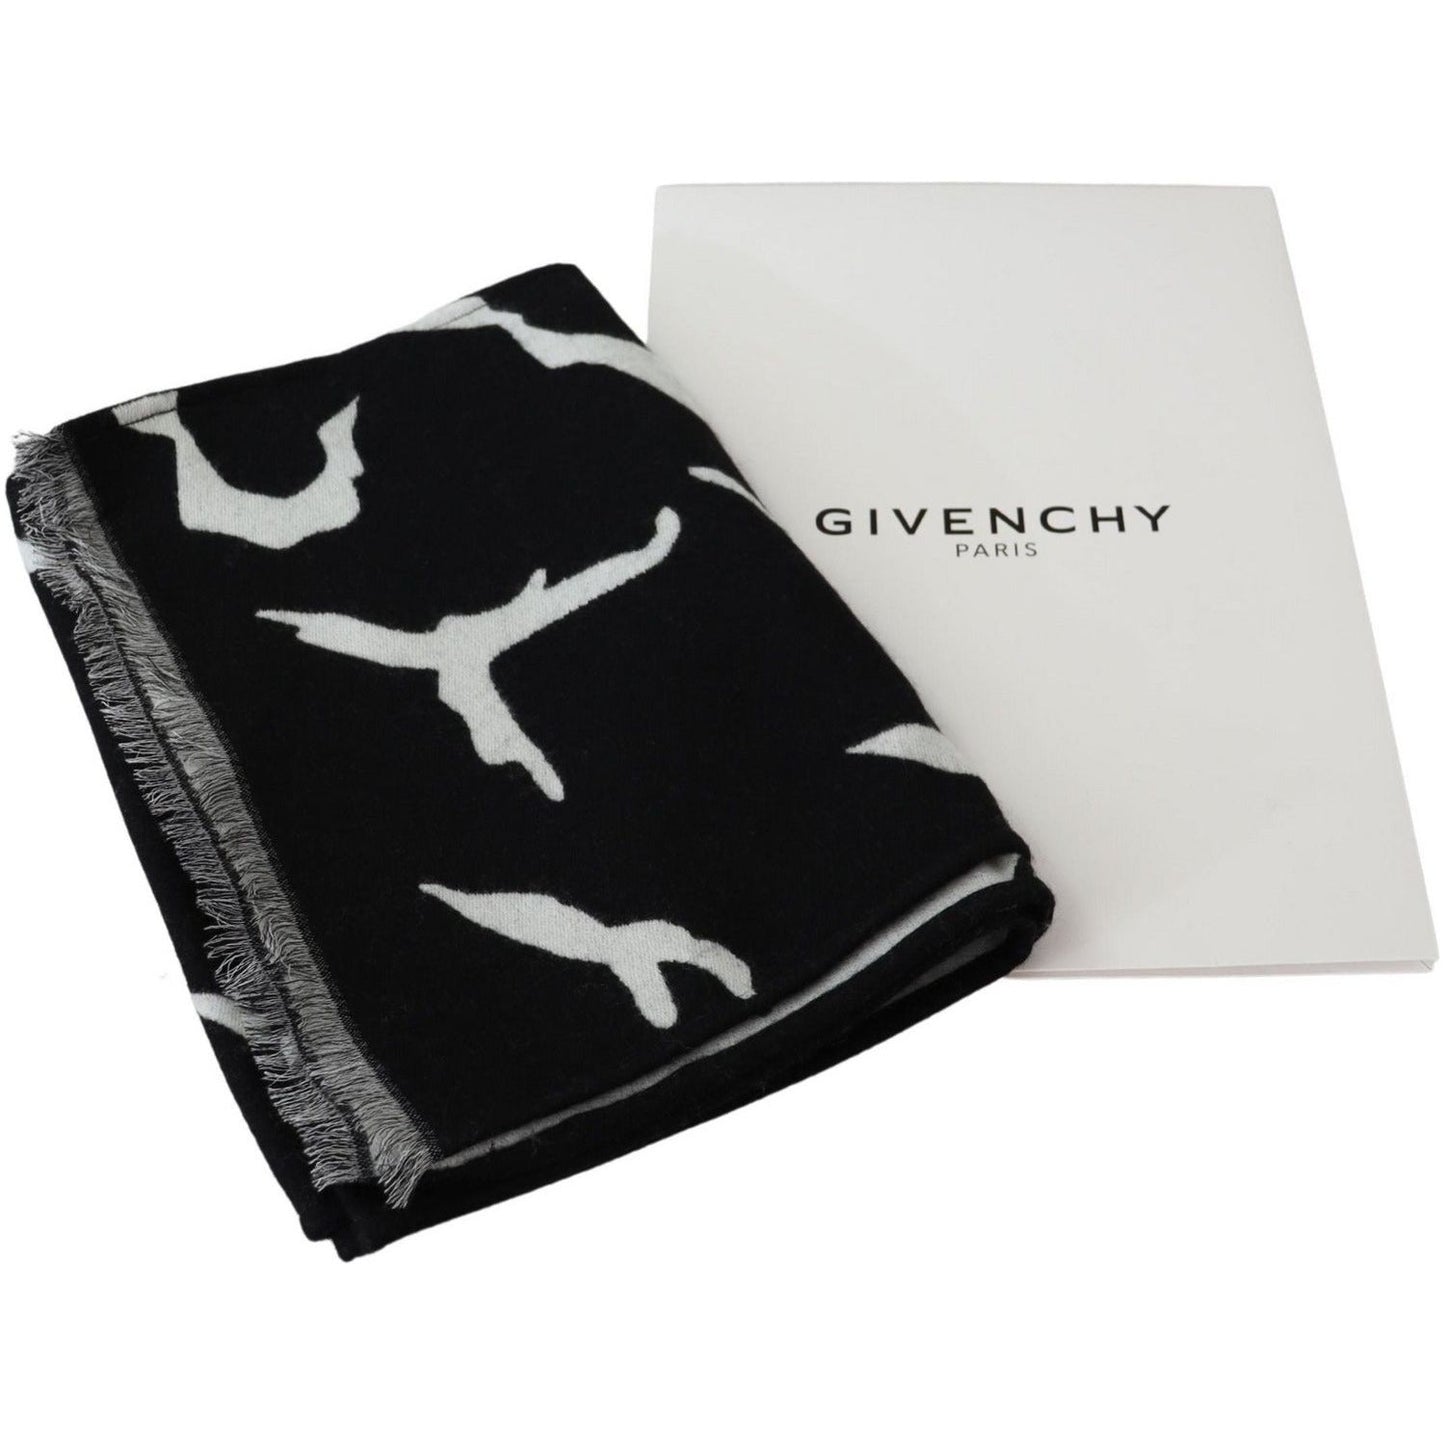 Givenchy Elegant Unisex Wool-Silk Scarf in Black & White Wool Wrap Shawls black-white-wool-unisex-winter-warm-scarf-wrap-shawl-1